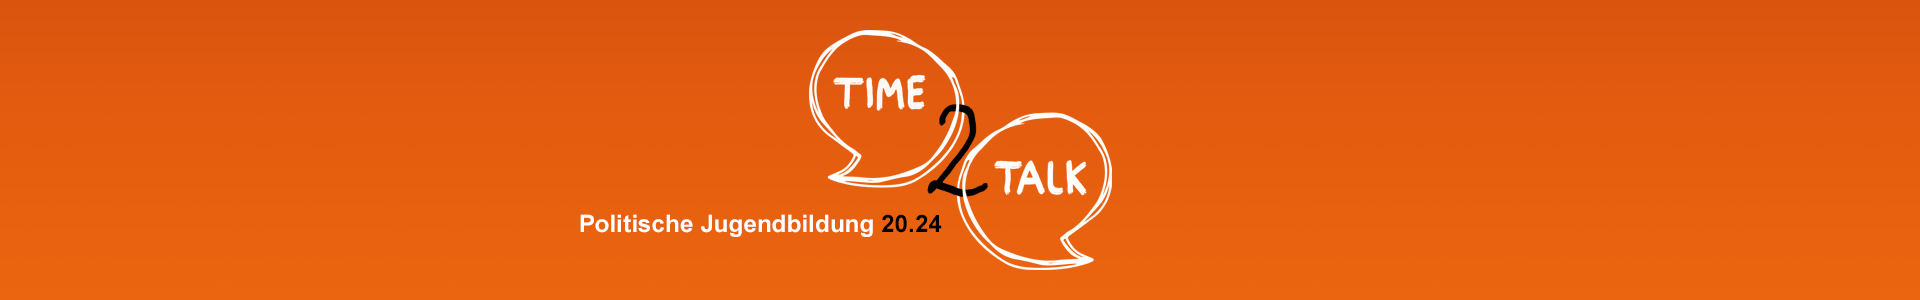 Headerbild zur Webtalk-Reihe „Time2Talk - Politische Jugendbildung 20.24”